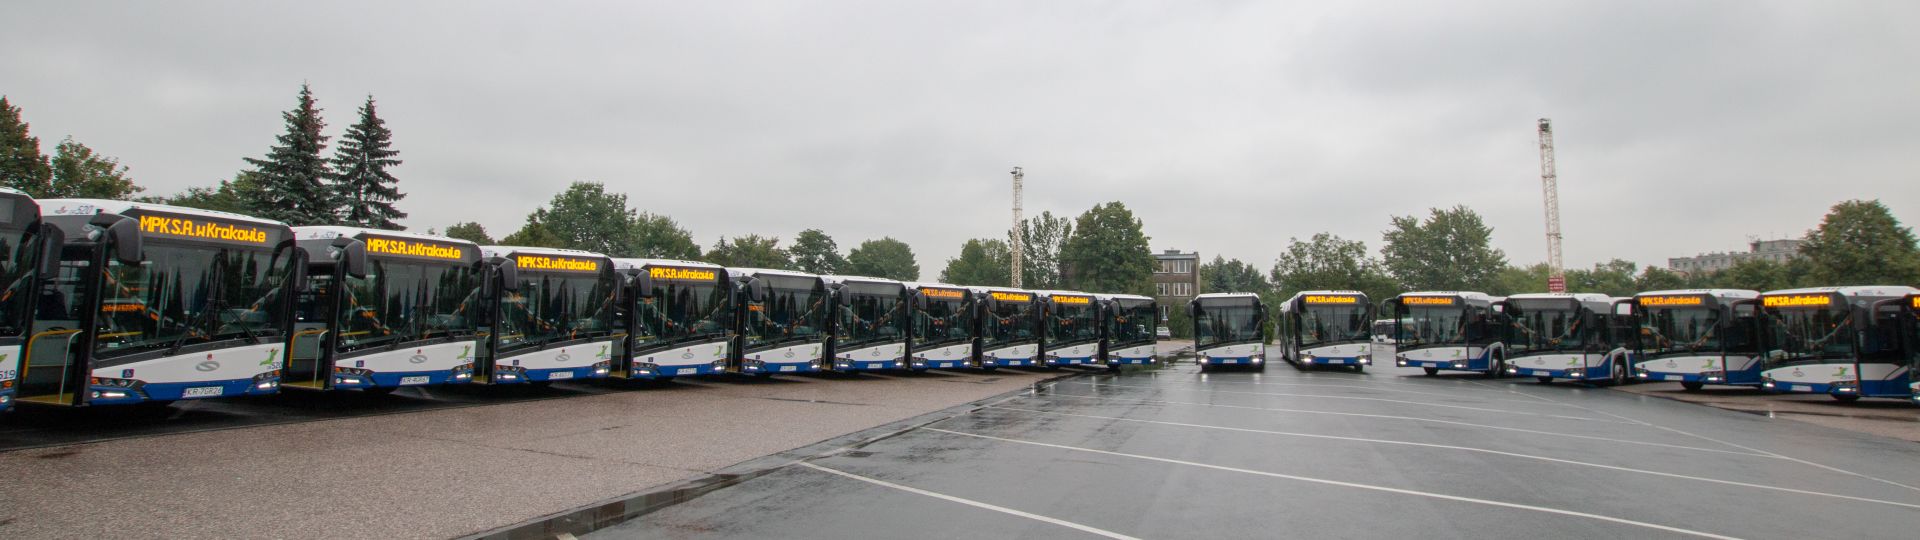 Solaris liefert 38 Gelenkbusse nach Kraków